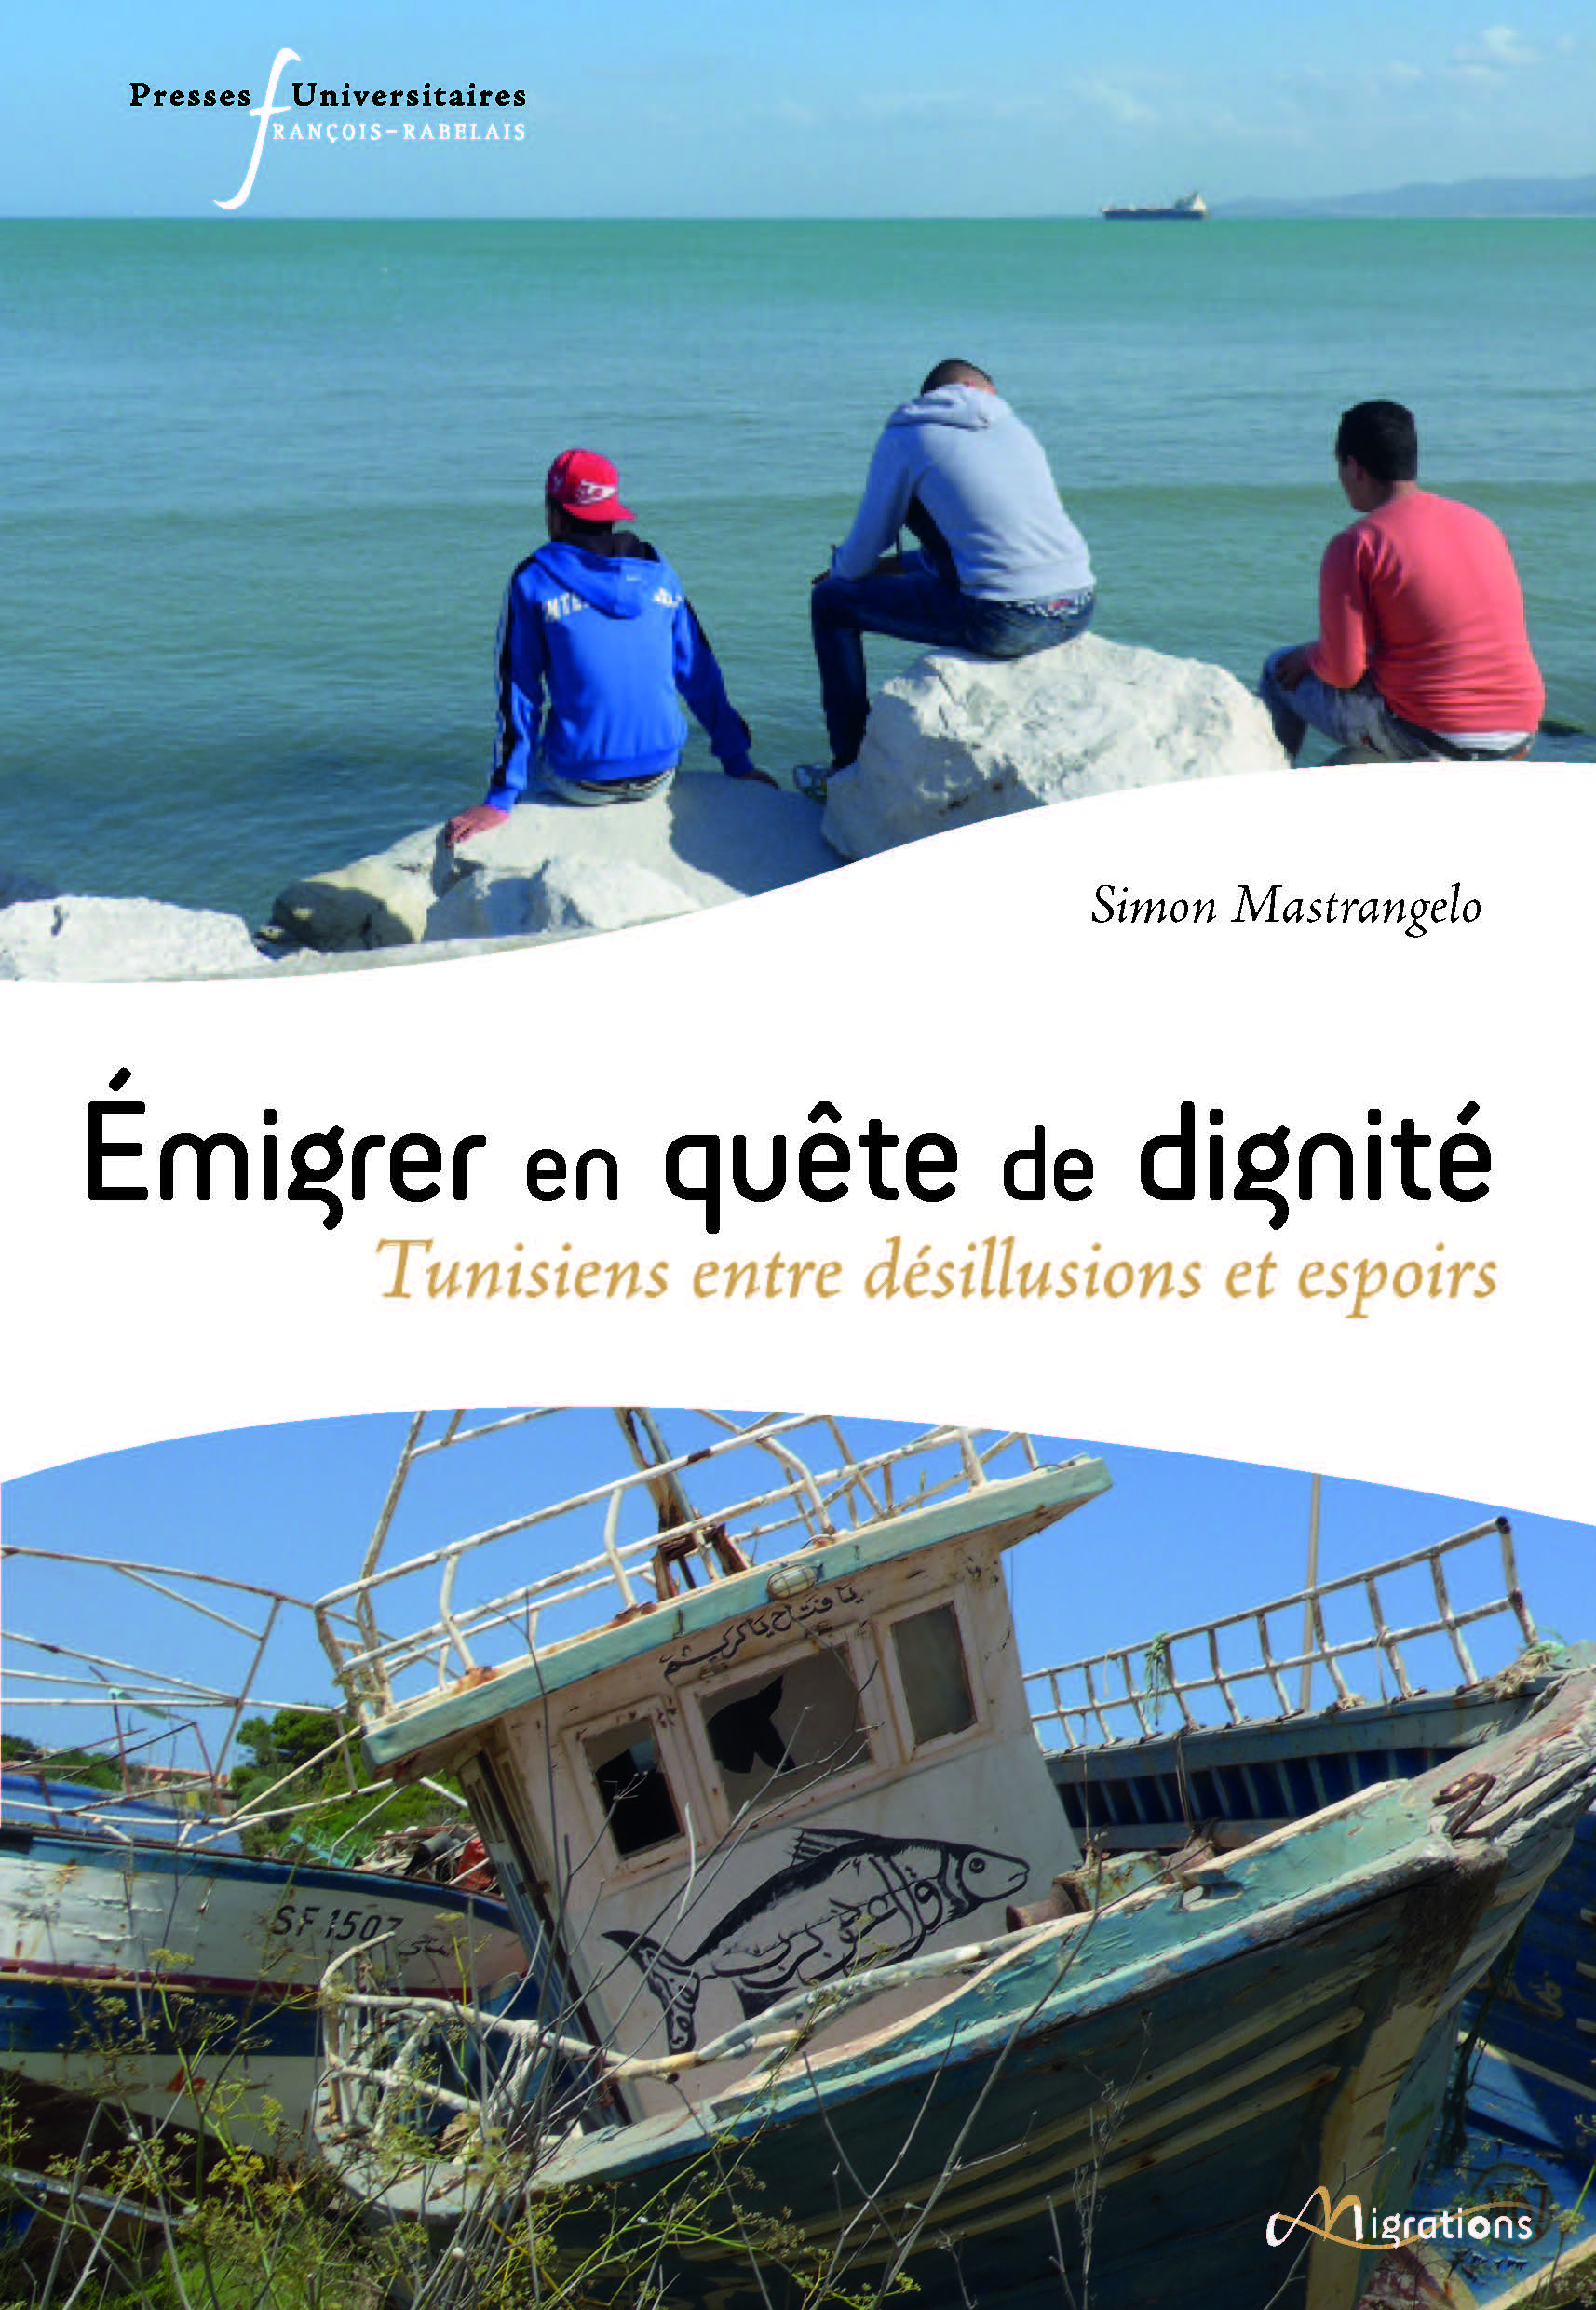 livre pufr presses universitaires francois rabelais emigrer en quete de dignite tunisiens en desillusions et espoirs simon mastrangelo collection migrations